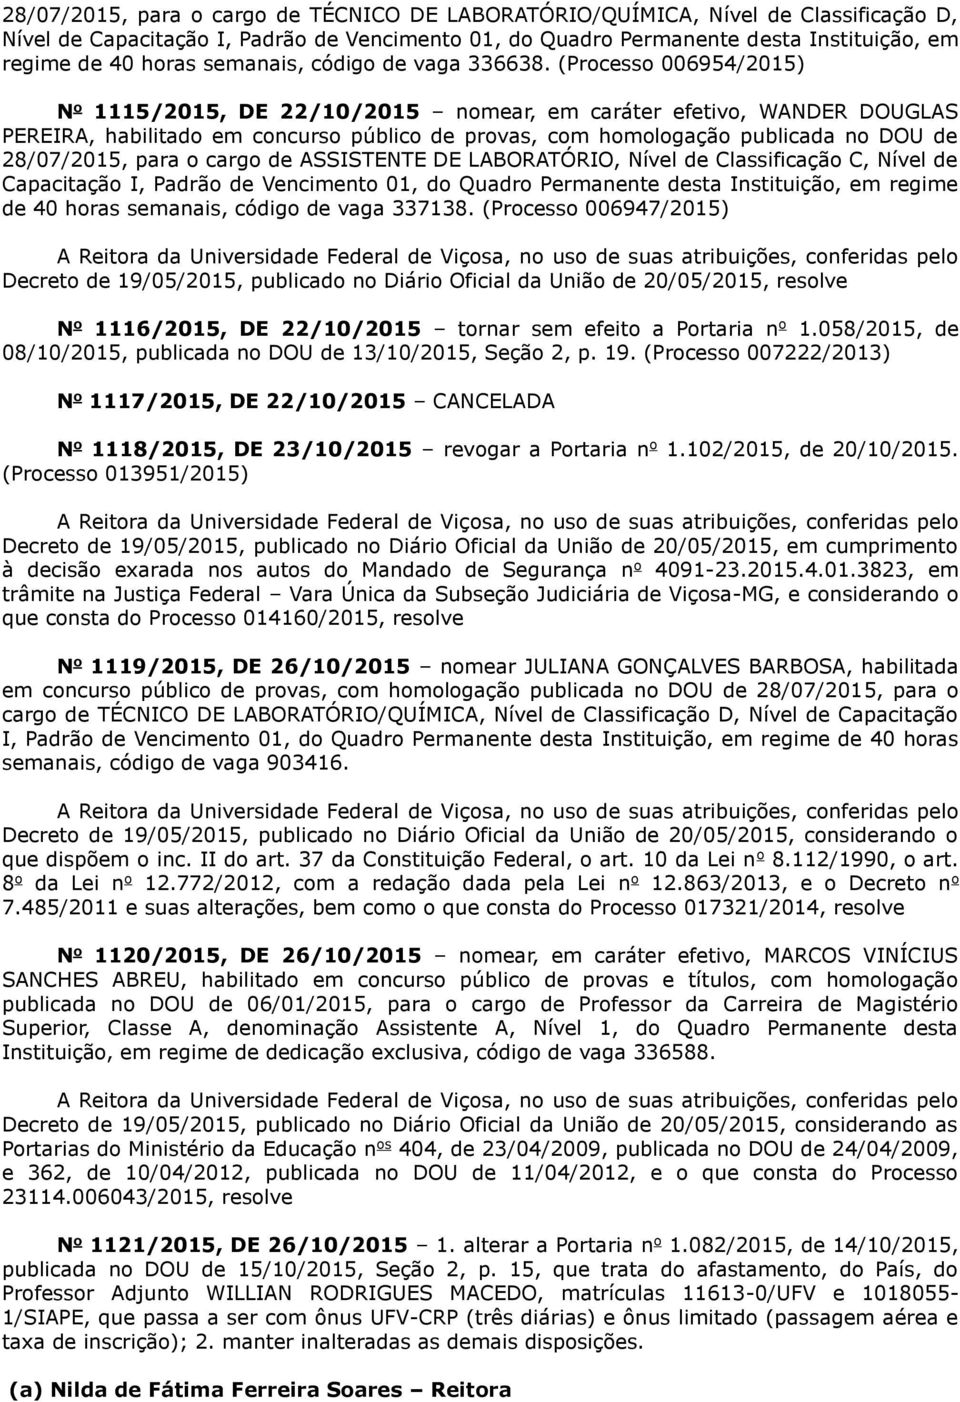 (Processo 006954/2015) N o 1115/2015, DE 22/10/2015 nomear, em caráter efetivo, WANDER DOUGLAS PEREIRA, habilitado em concurso público de provas, com homologação publicada no DOU de 28/07/2015, para